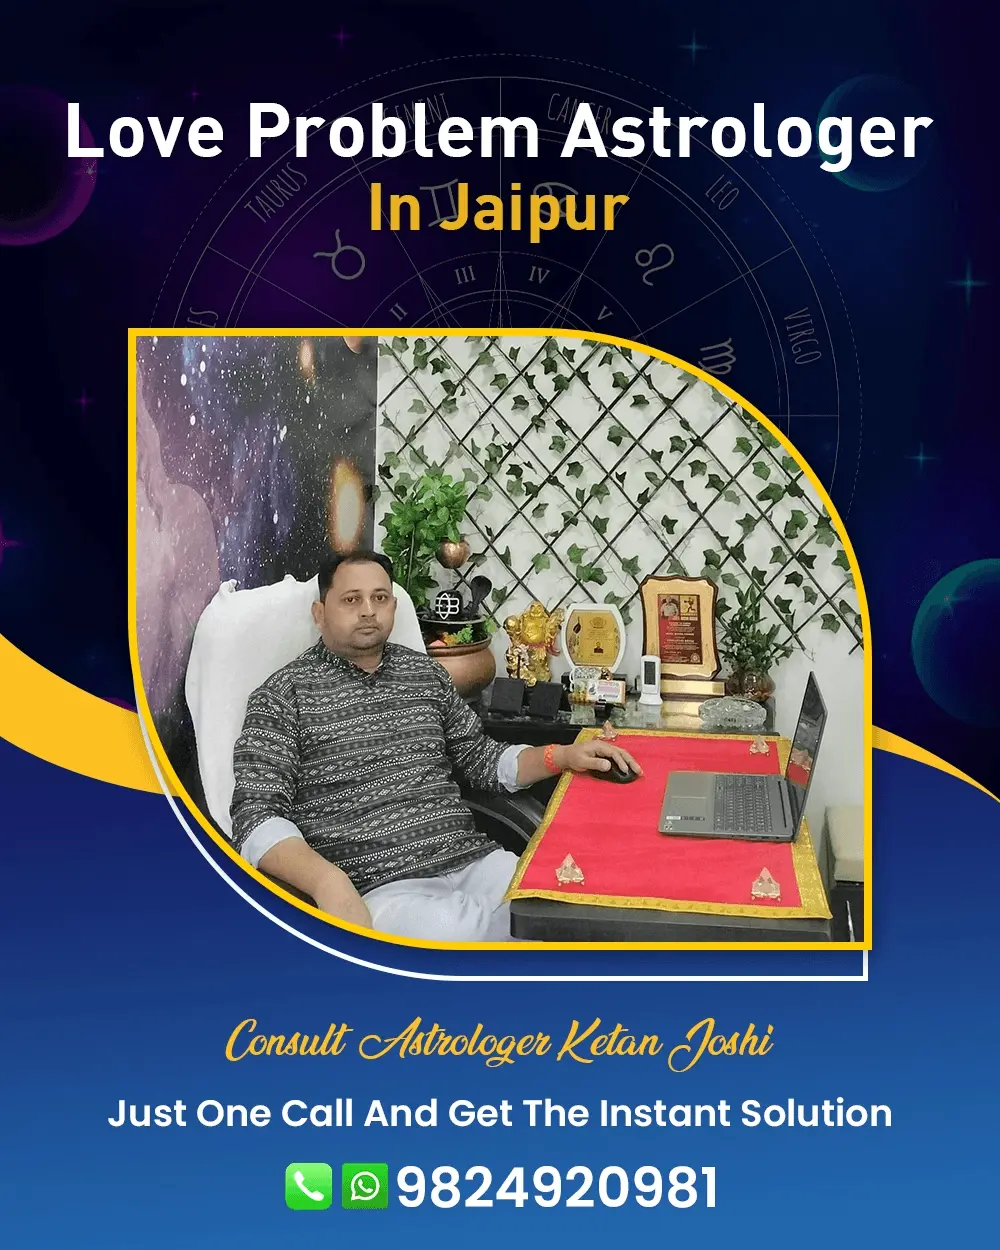 Love Problem Astrologer In Jaipur